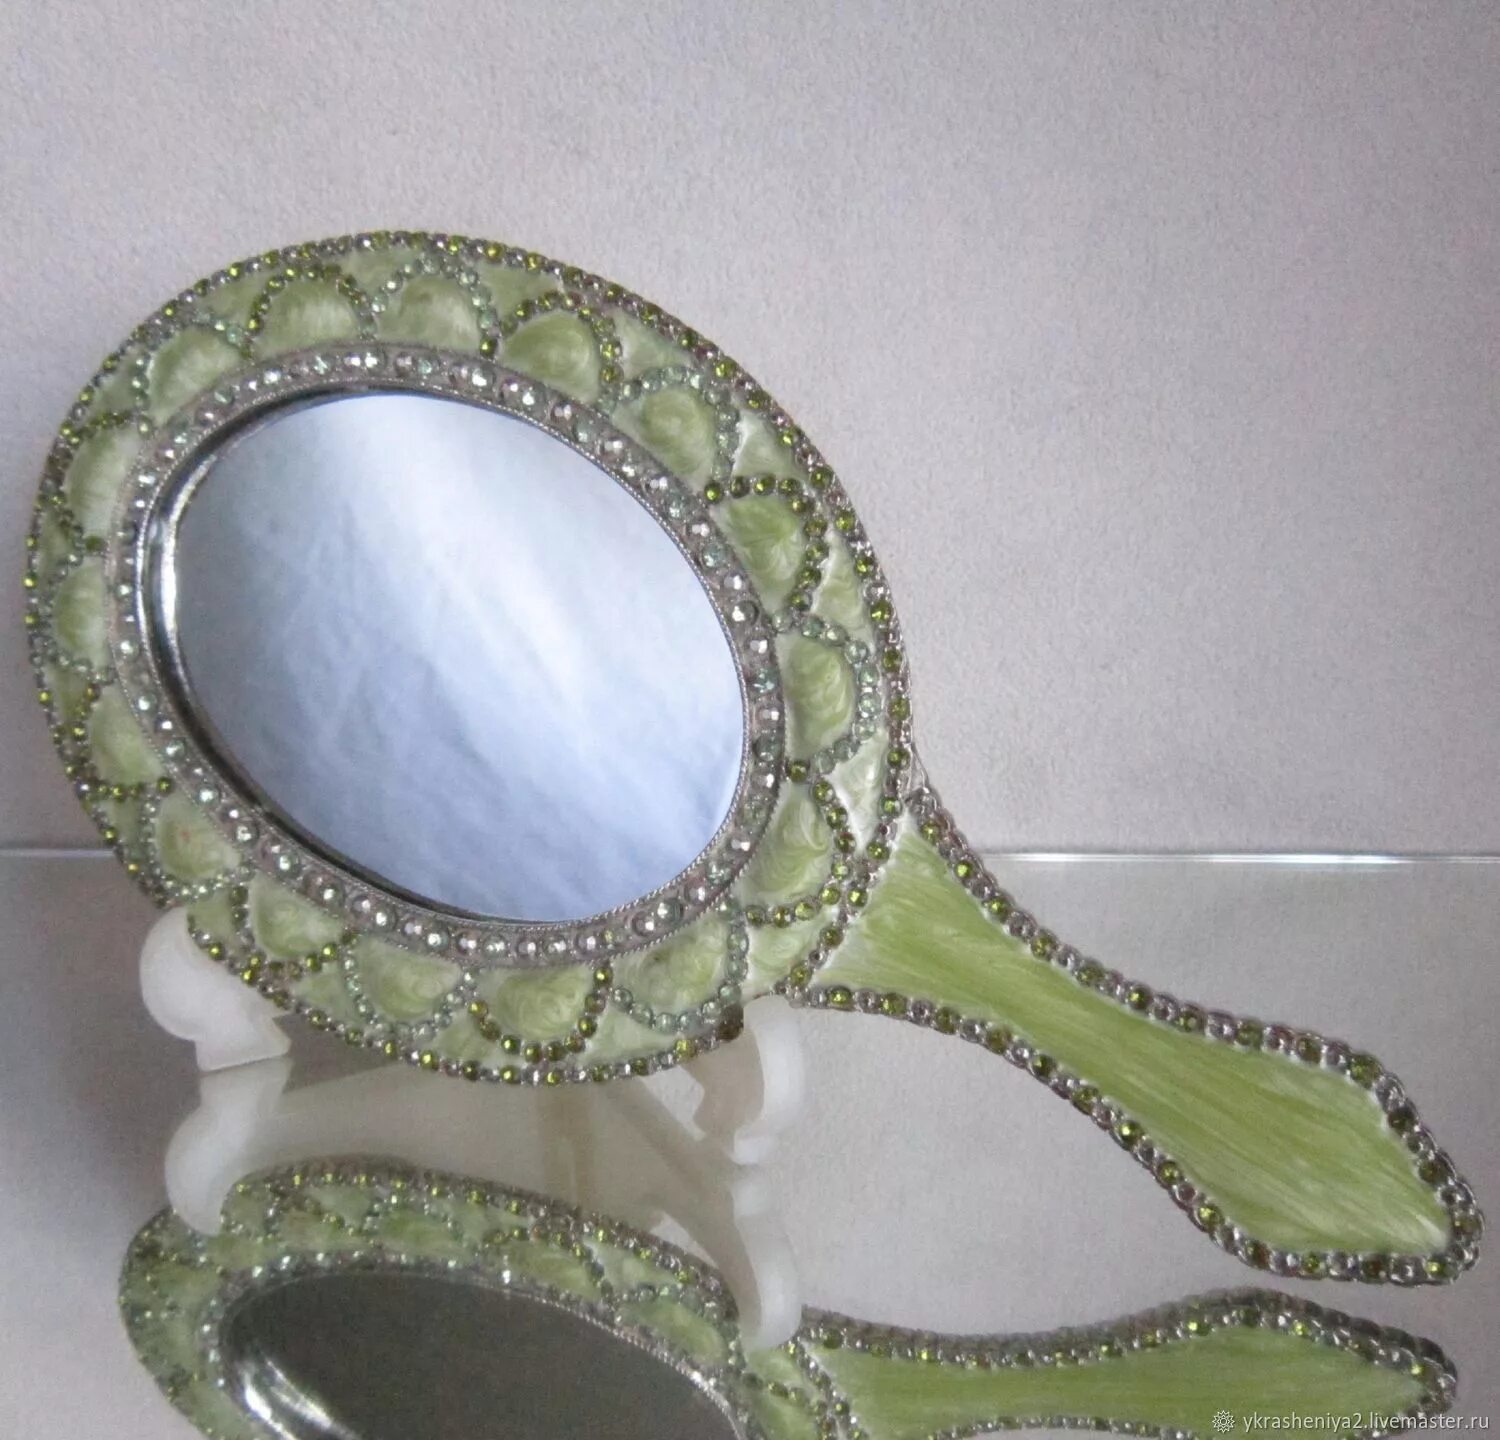 Механическое зеркало купить. Зеркало ручное. Ручное зеркальце. Женское зеркальце. Красивое ручное зеркало.